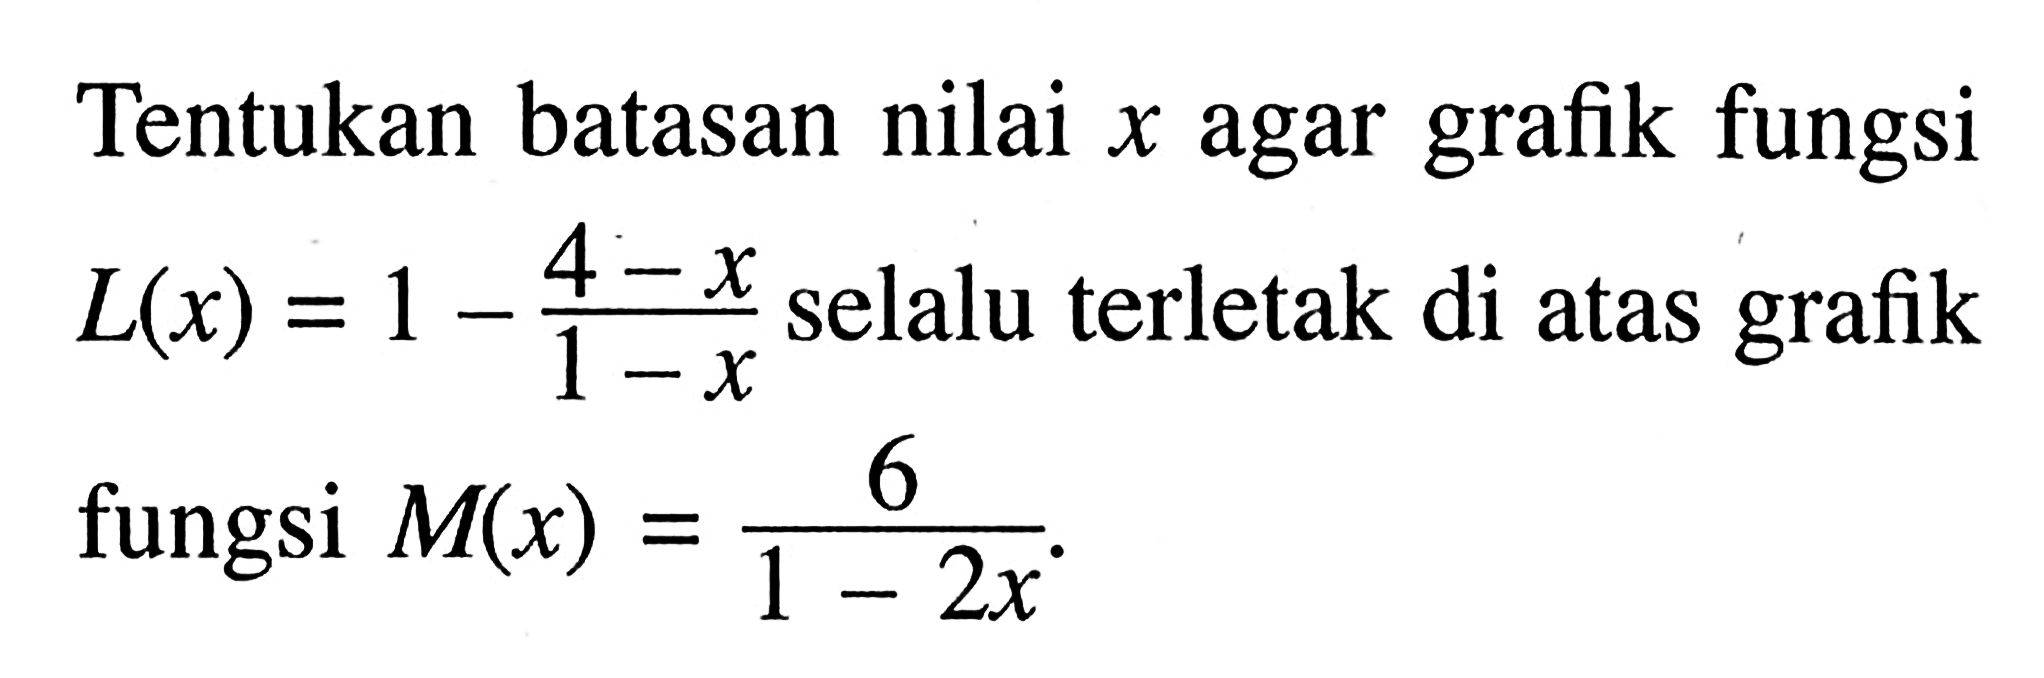 Tentukan batasan nilai grafik fungsi X agar L(x) = 1 - (4-x) / (1-x) selalu terletak di atas grafik fungsi M(x) = 6 / 1-2x